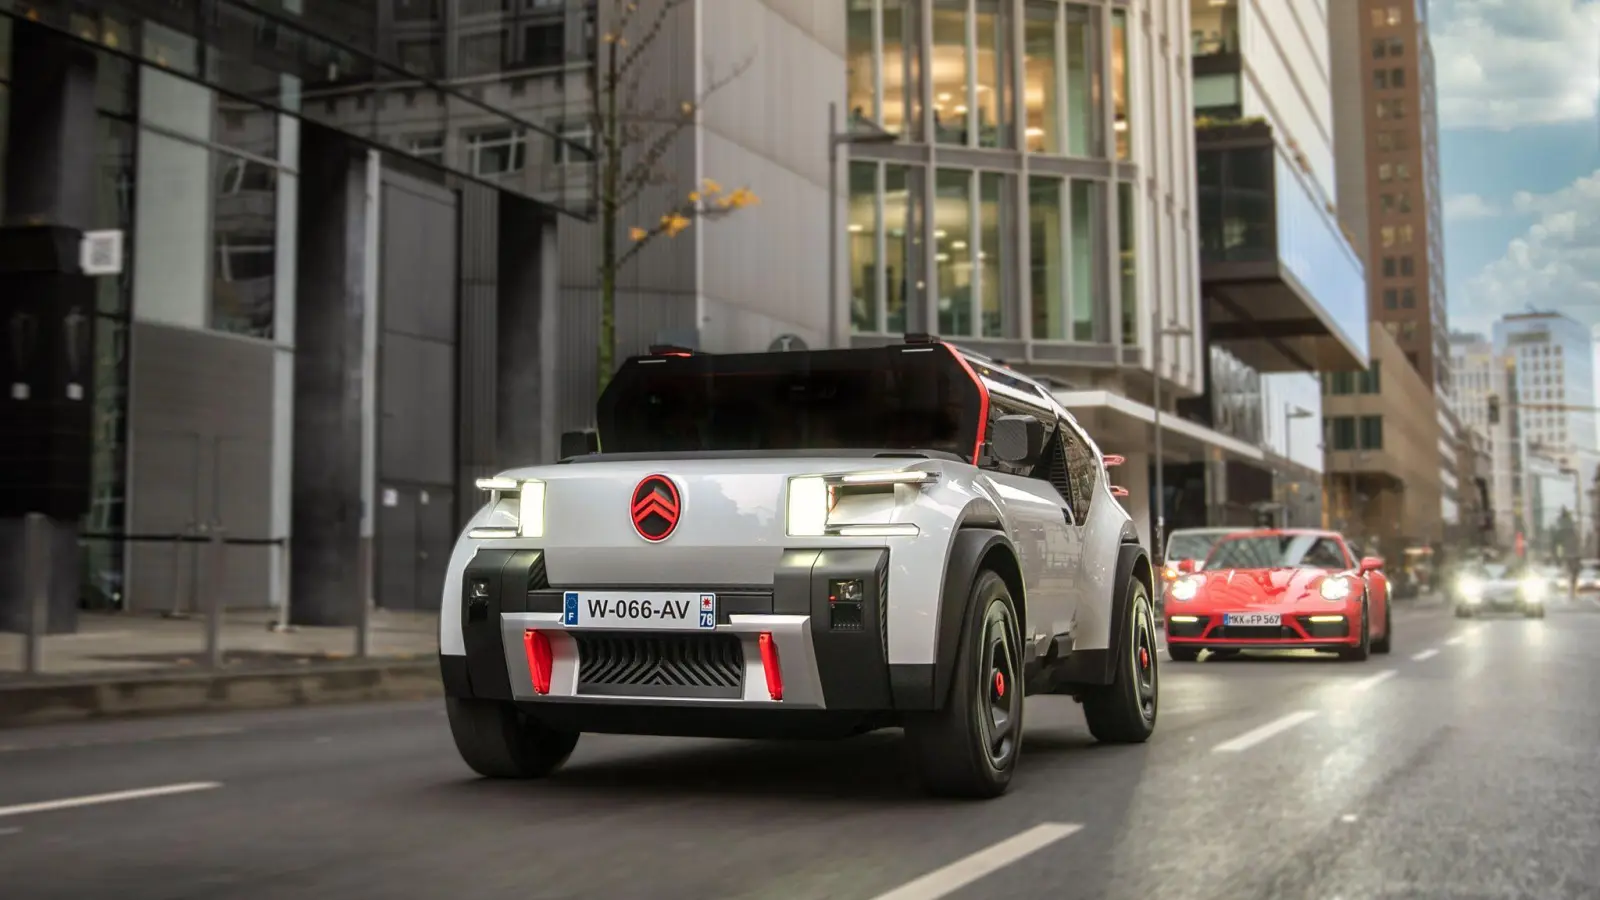 Auffälliges Design: Der Citroën Oli sieht aus wie ein geschrumpfter Riesen-Pick-up von Hummer. (Foto: Citroën/Stellantis/dpa-mag)